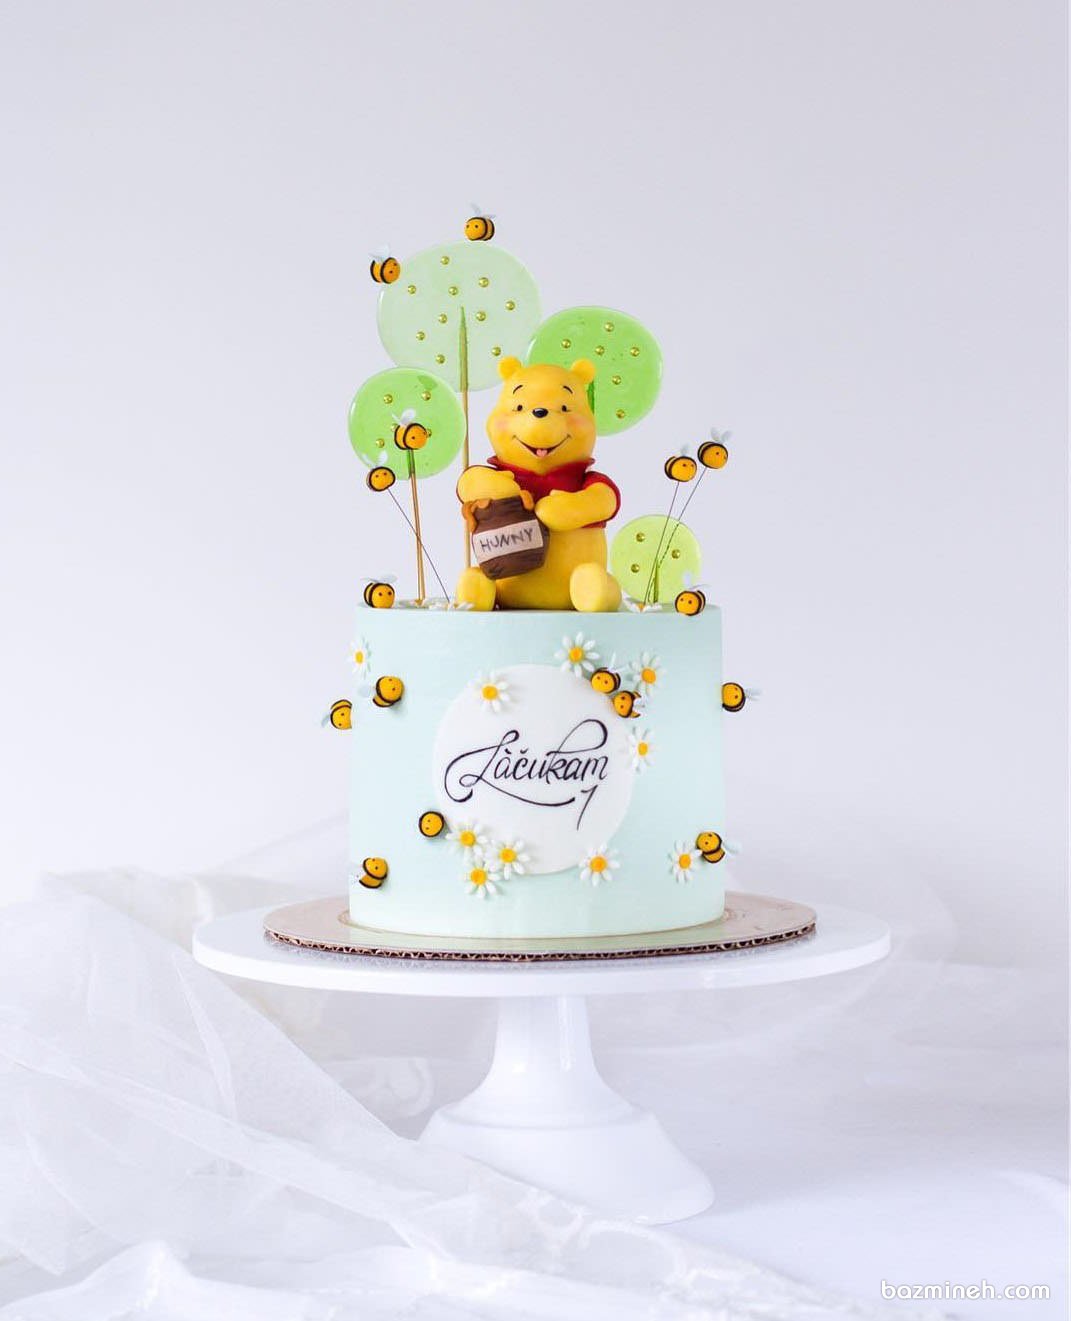 کیک فانتزی جشن تولد کودک با تم پو و زنبور عسل